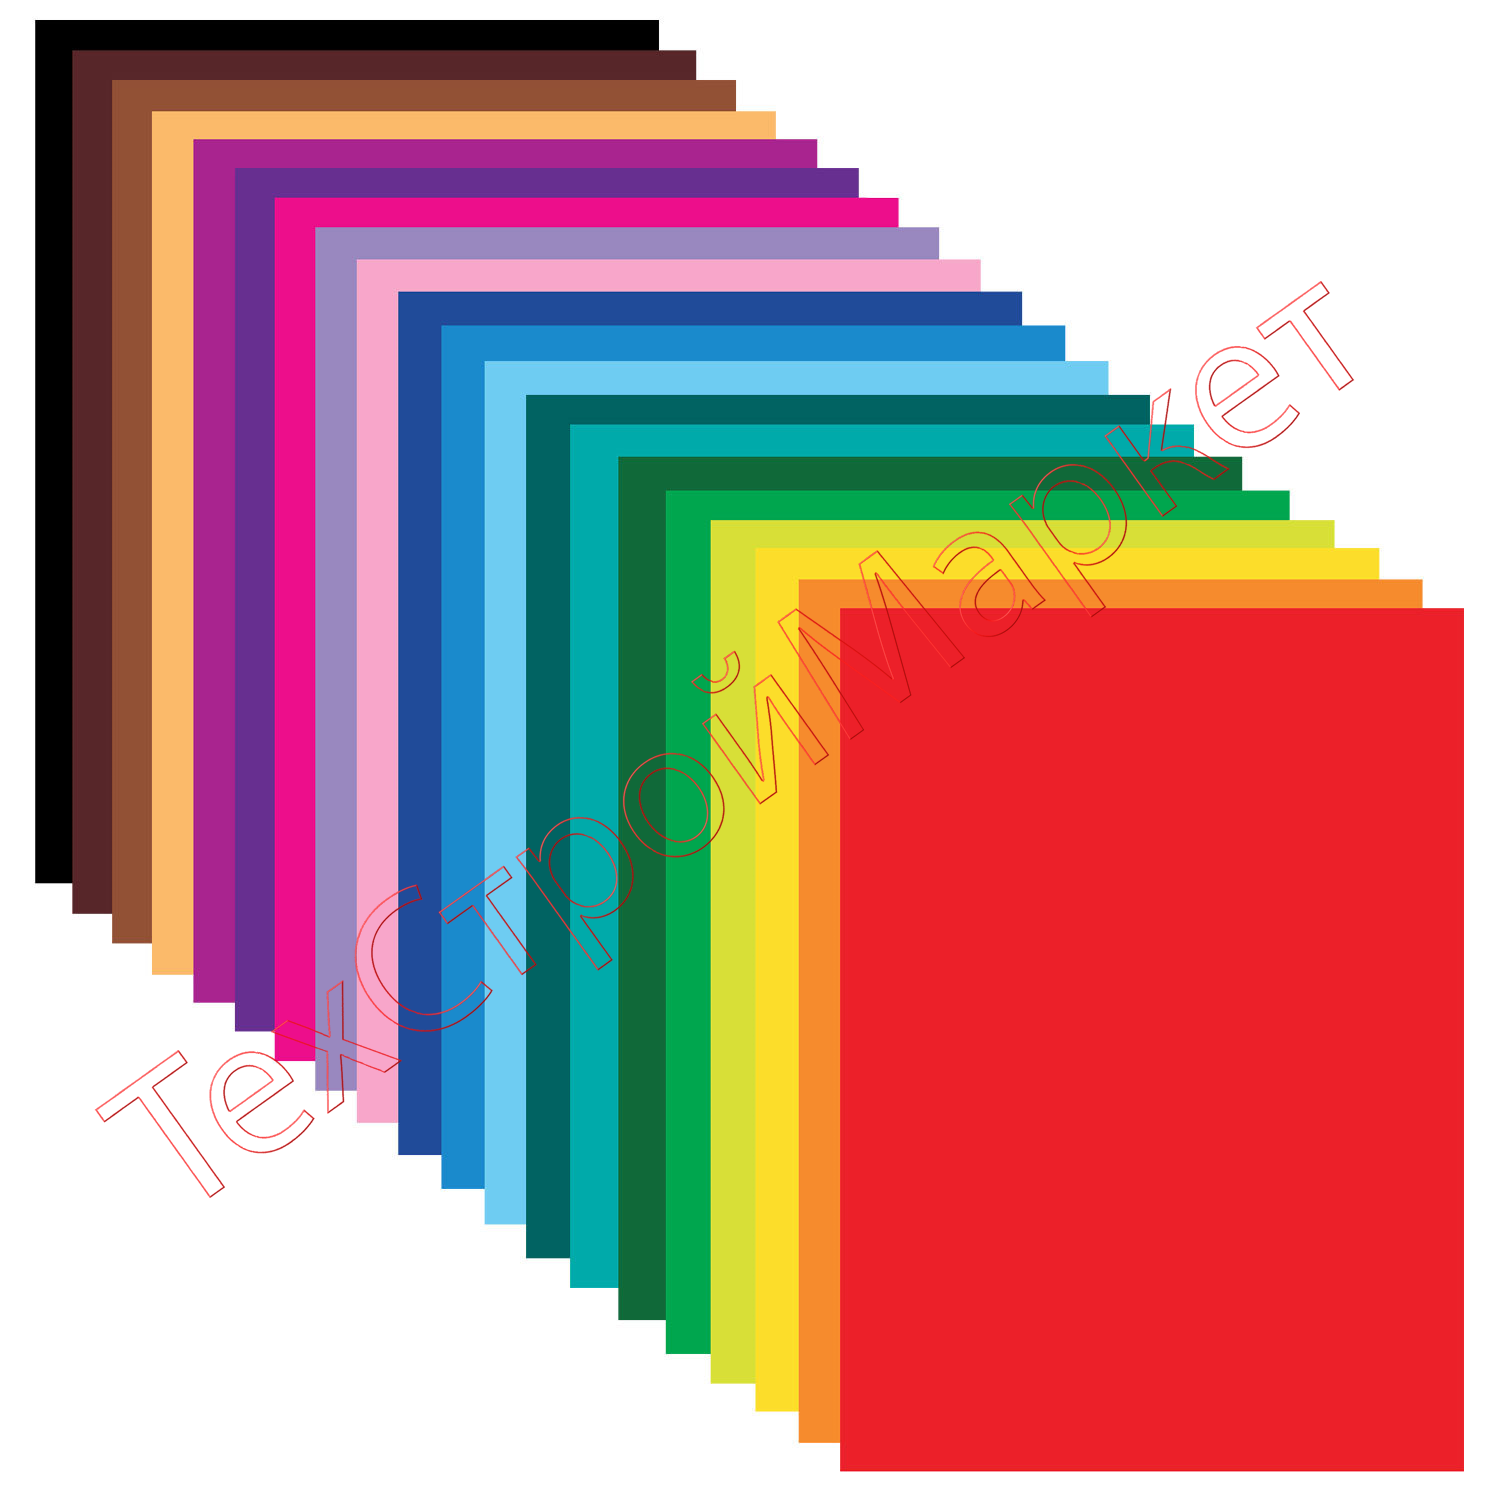 Цветная бумага БОЛЬШОГО ФОРМАТА (297х420 мм), А3, мелованная, 20 цветов, папка, ОСТРОВ СОКРОВИЩ, 129546